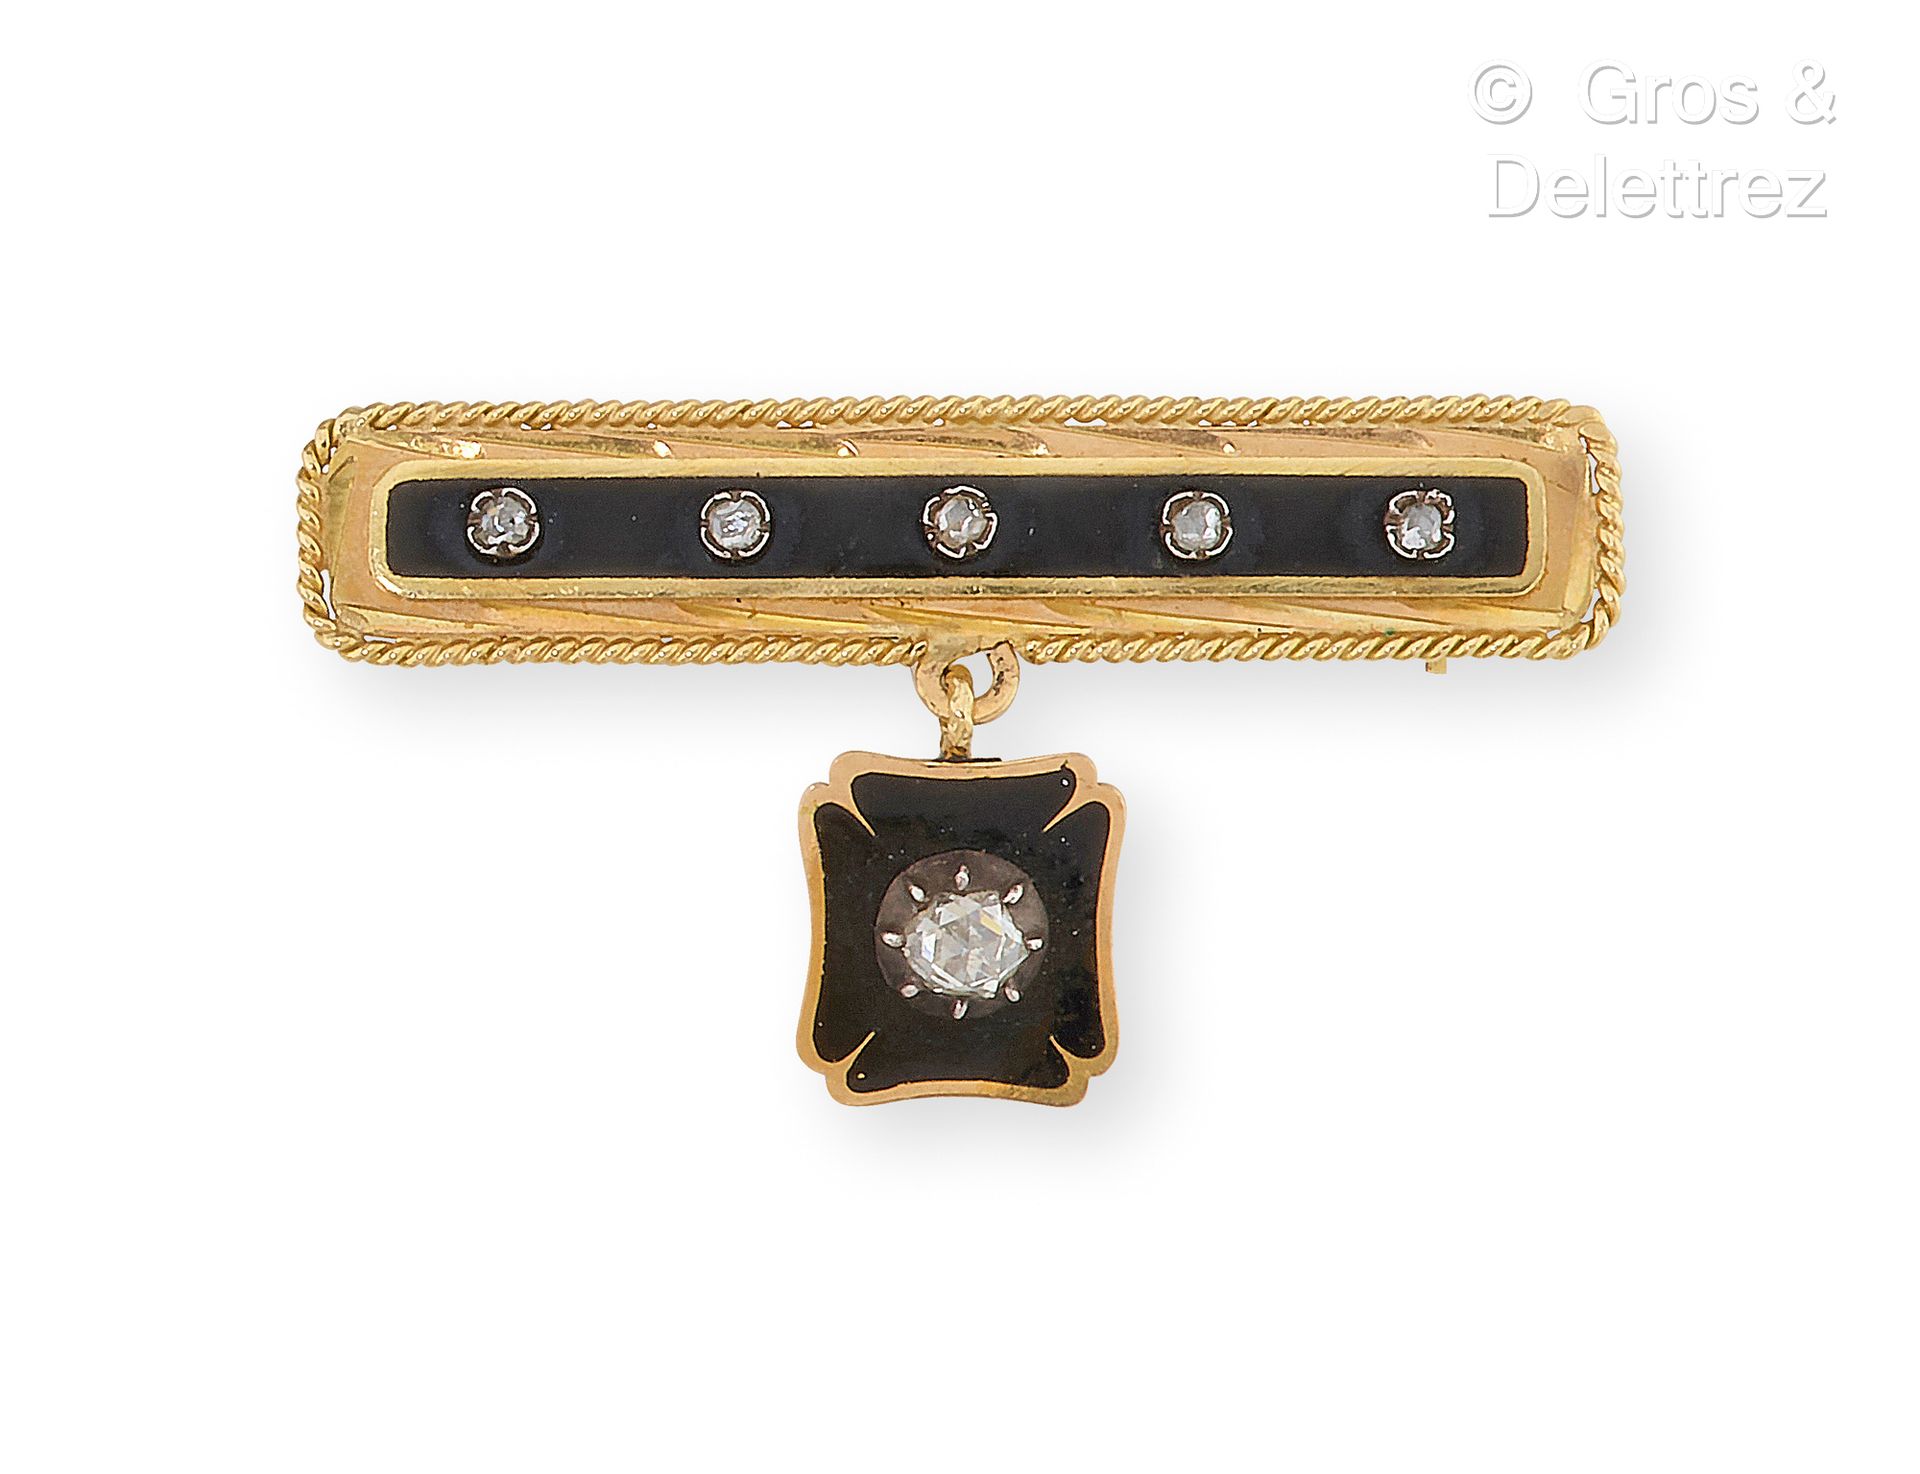 Null Barette "黄金胸针，部分为黑色珐琅，突出老式切割钻石。它承载着一个黄金板，也是珐琅质的，并镶嵌着一颗较大的钻石。长度：4厘米。毛重：5.9克。